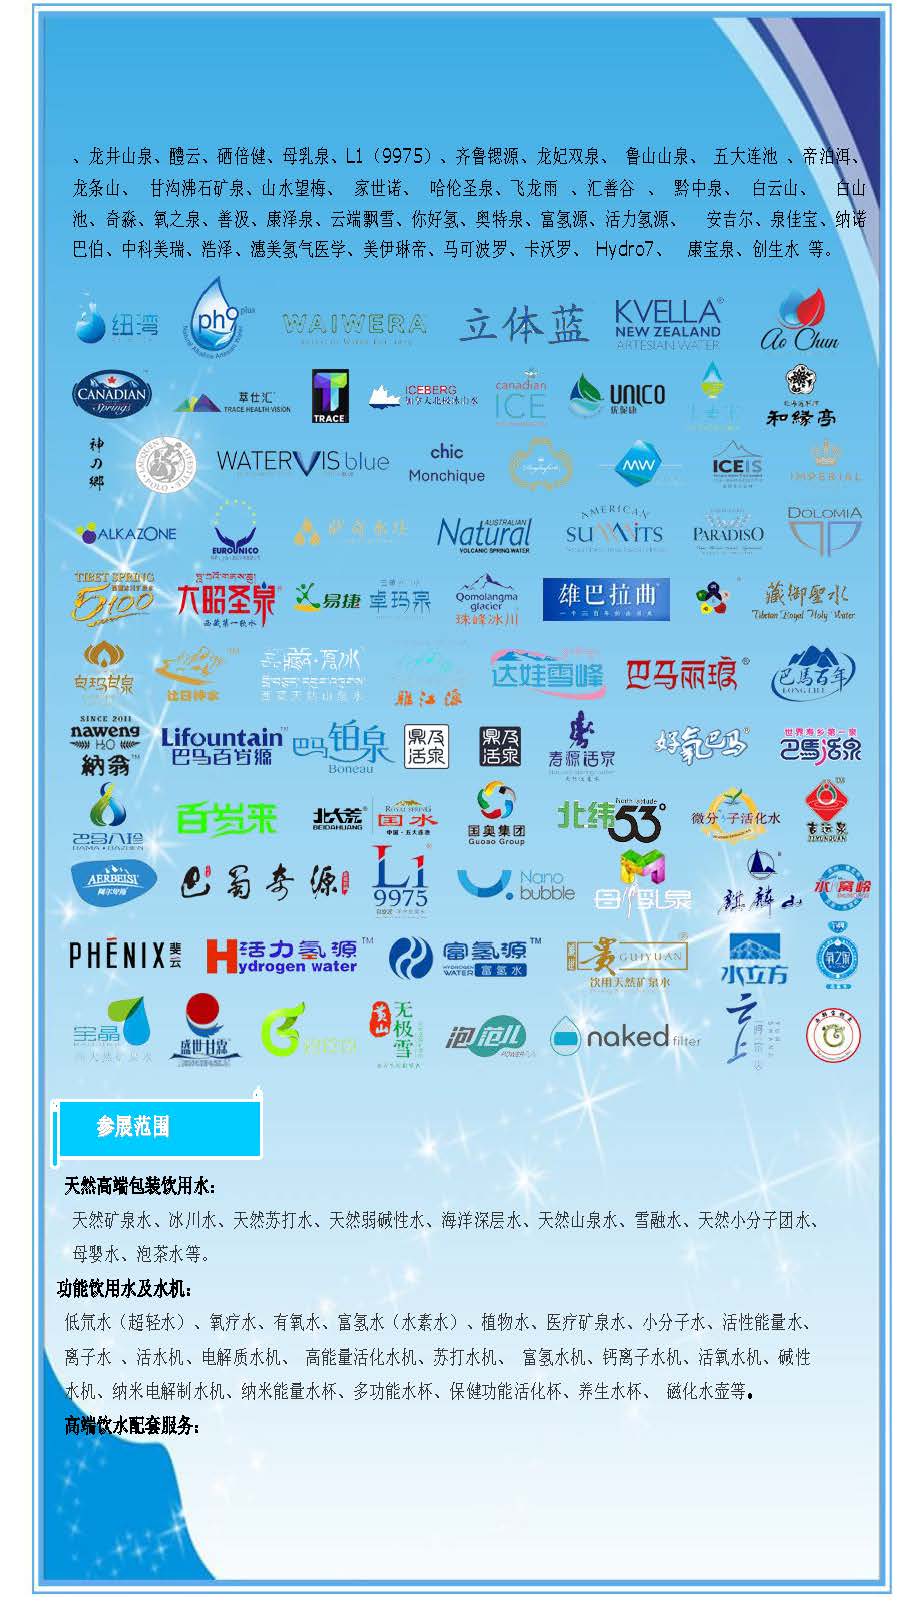 2016 第 9 届中国国际高端饮用水产业（上海）博览会暨功能饮用水（水机）展览会邀请函